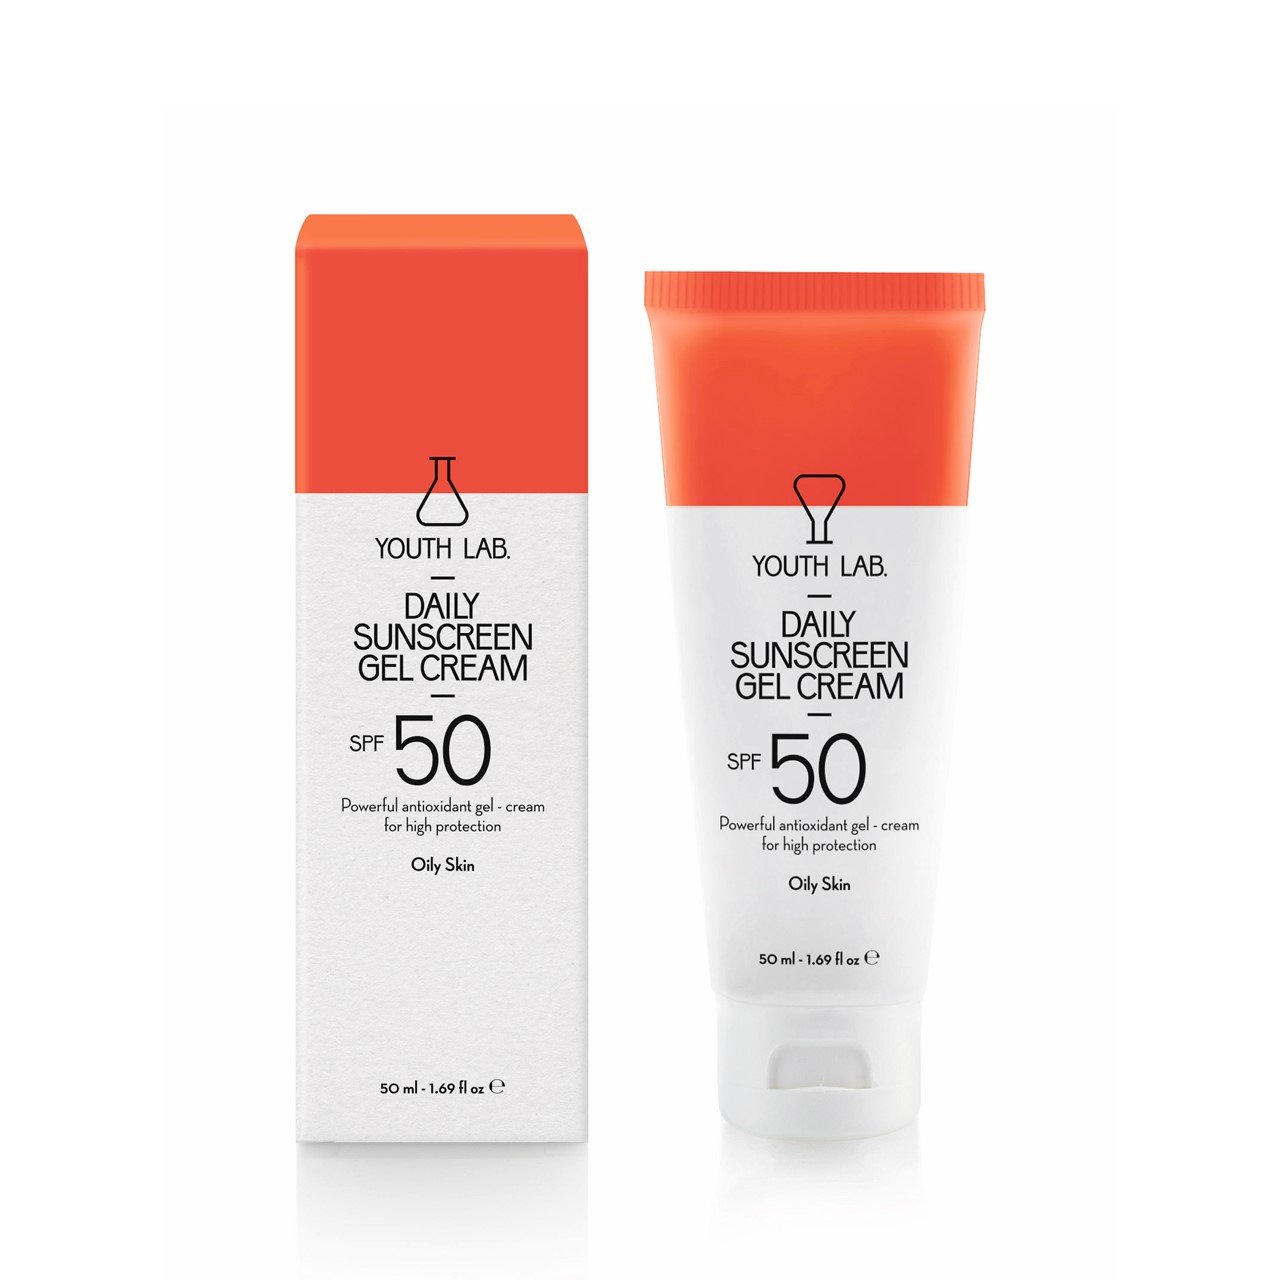 YOUTH LAB Daily Sunscreen Gel Cream SPF50 Oily Skin 50ml (1.69fl oz)